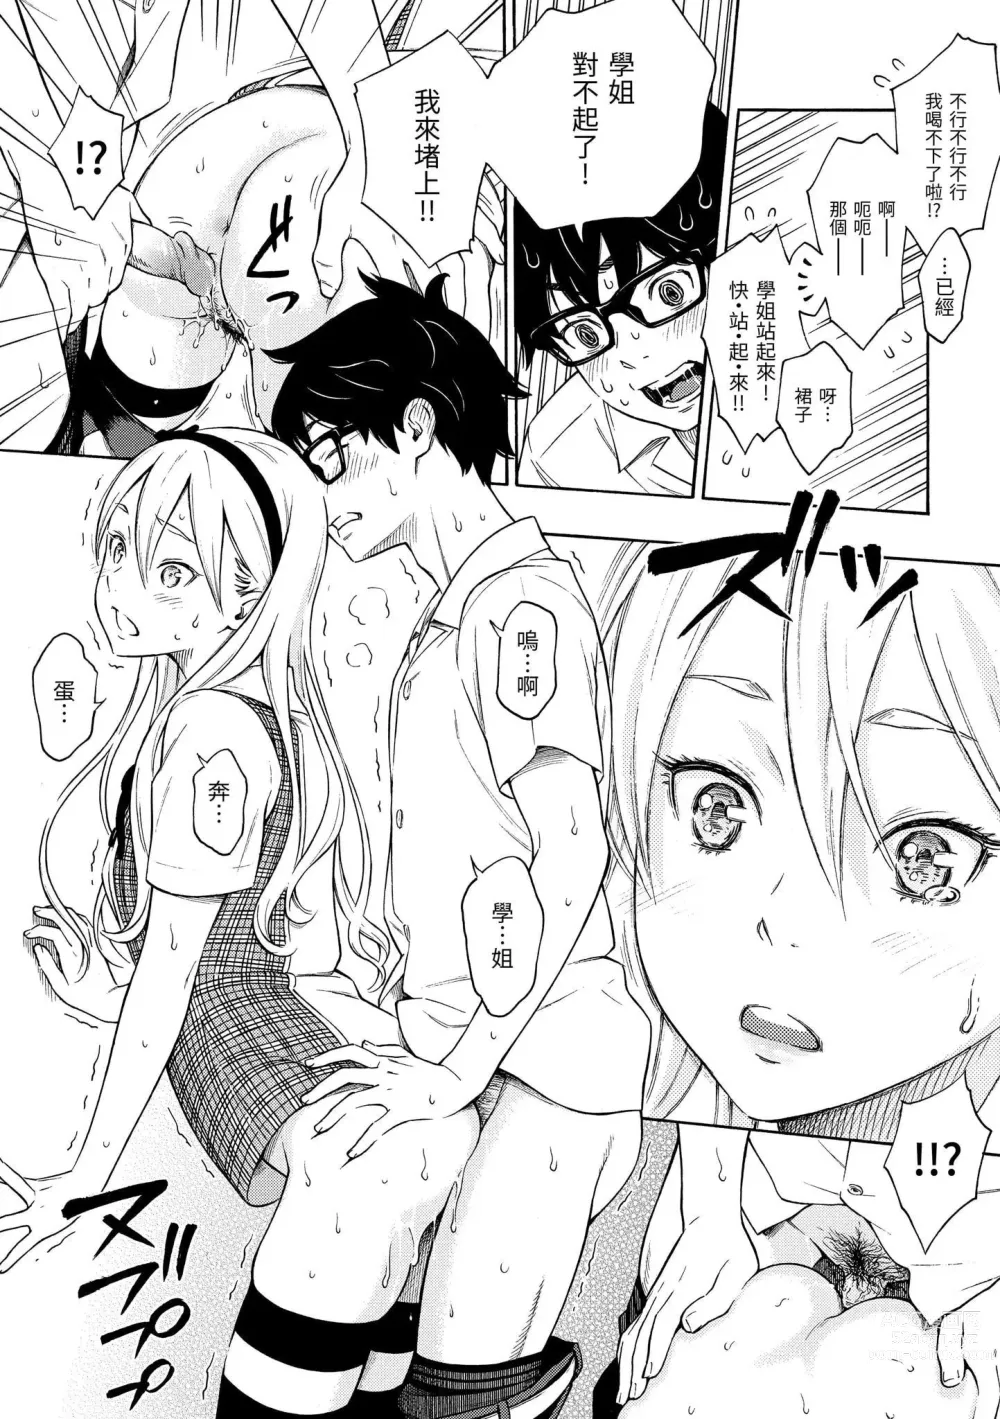 Page 19 of manga 放學後的香草女孩 (decensored)